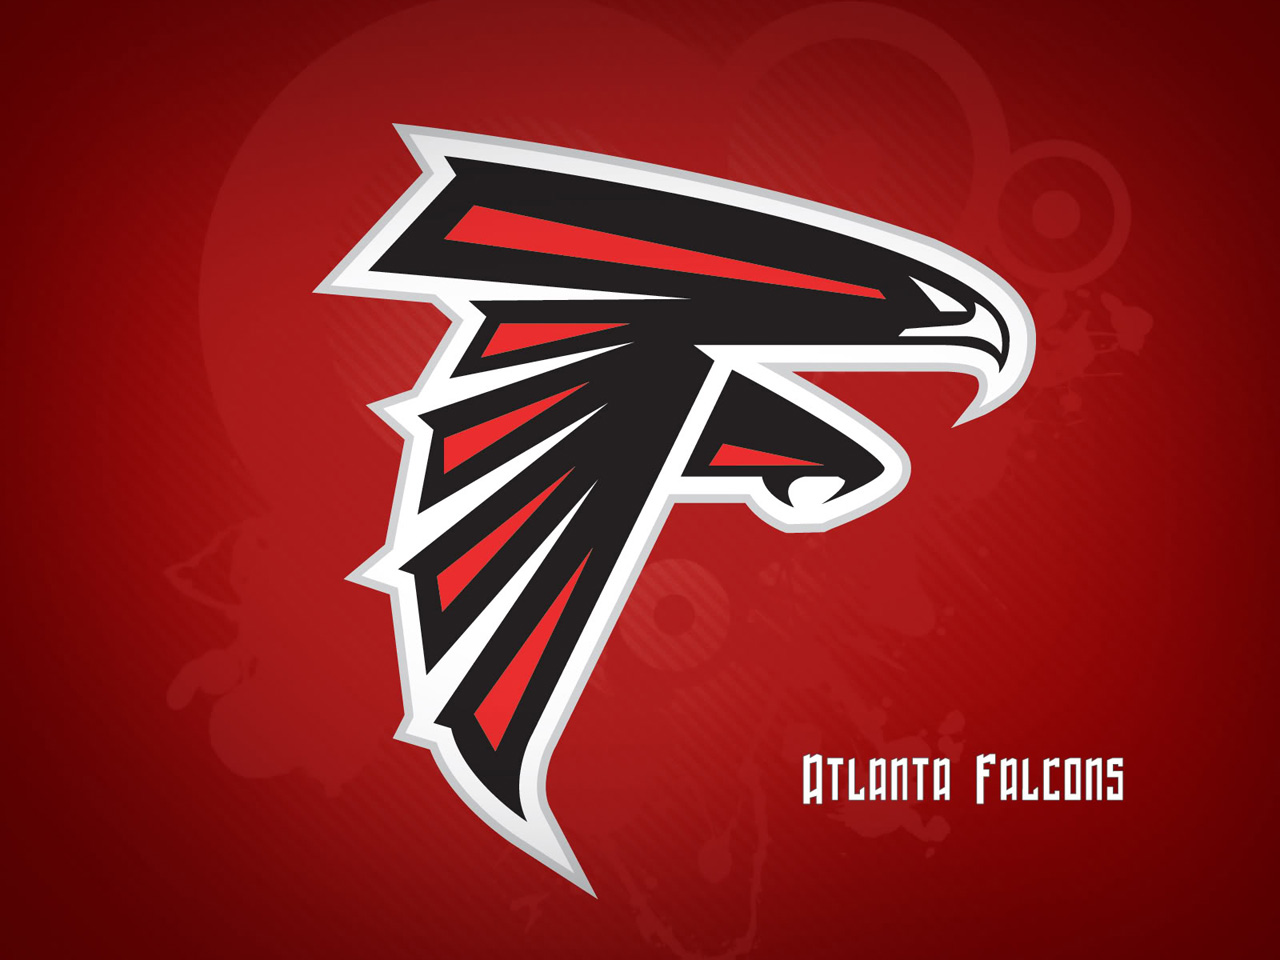 Melhores papéis de parede de Atlanta Falcons para tela do telefone